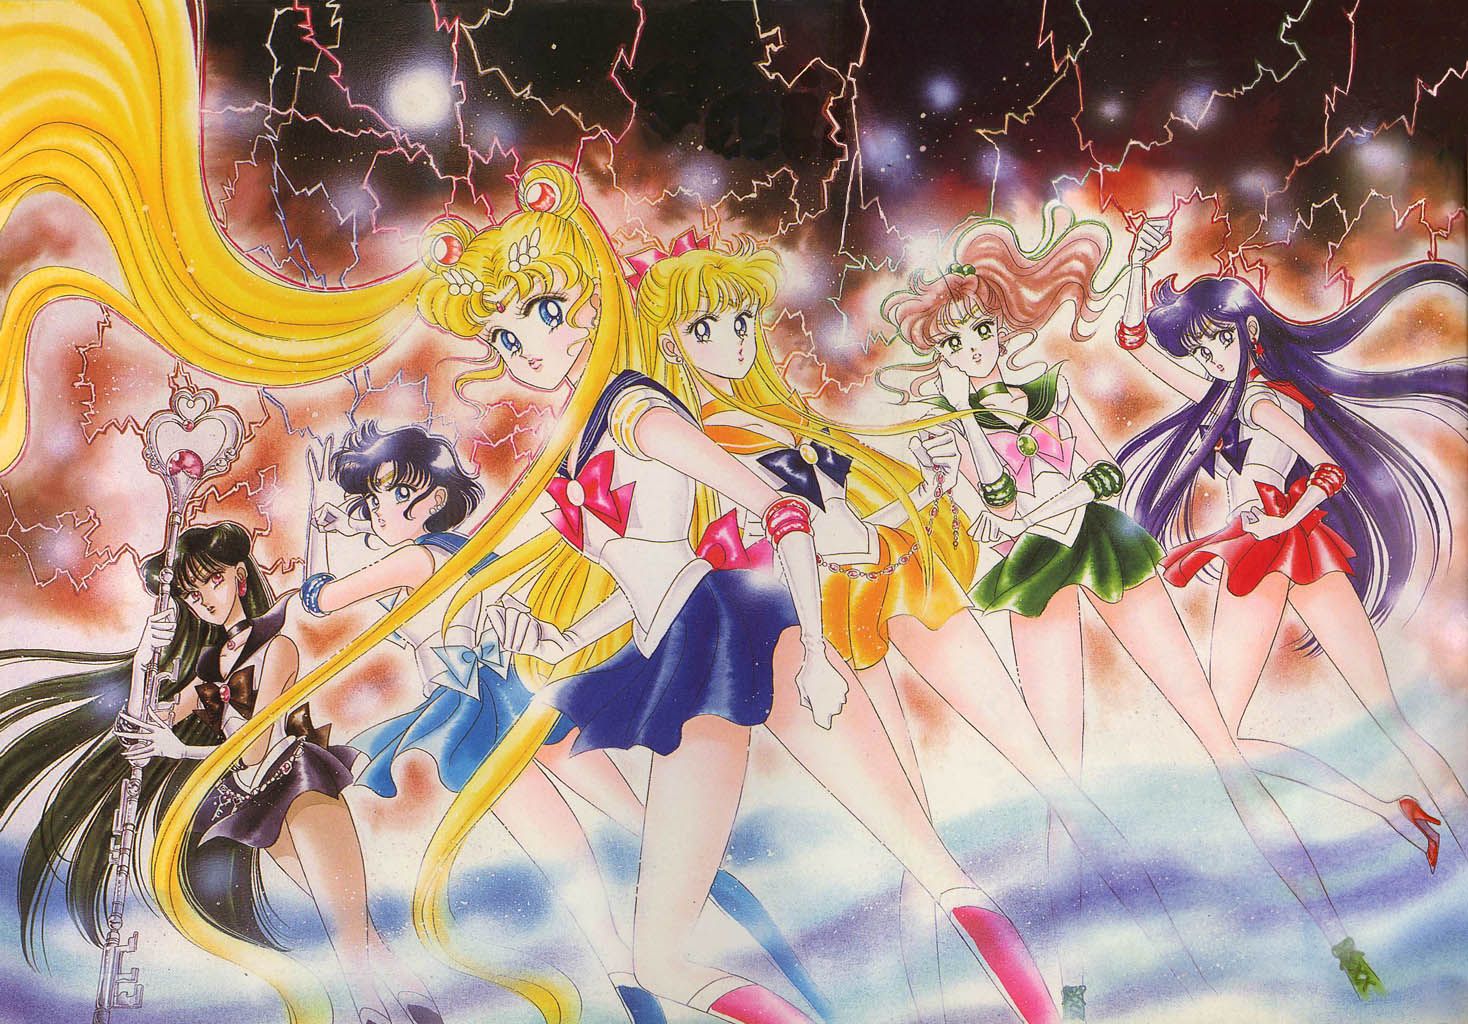 ហេតុអ្វី Sailor Moon នៅតែមានបញ្ហាជិត ៣០ ឆ្នាំក្រោយ